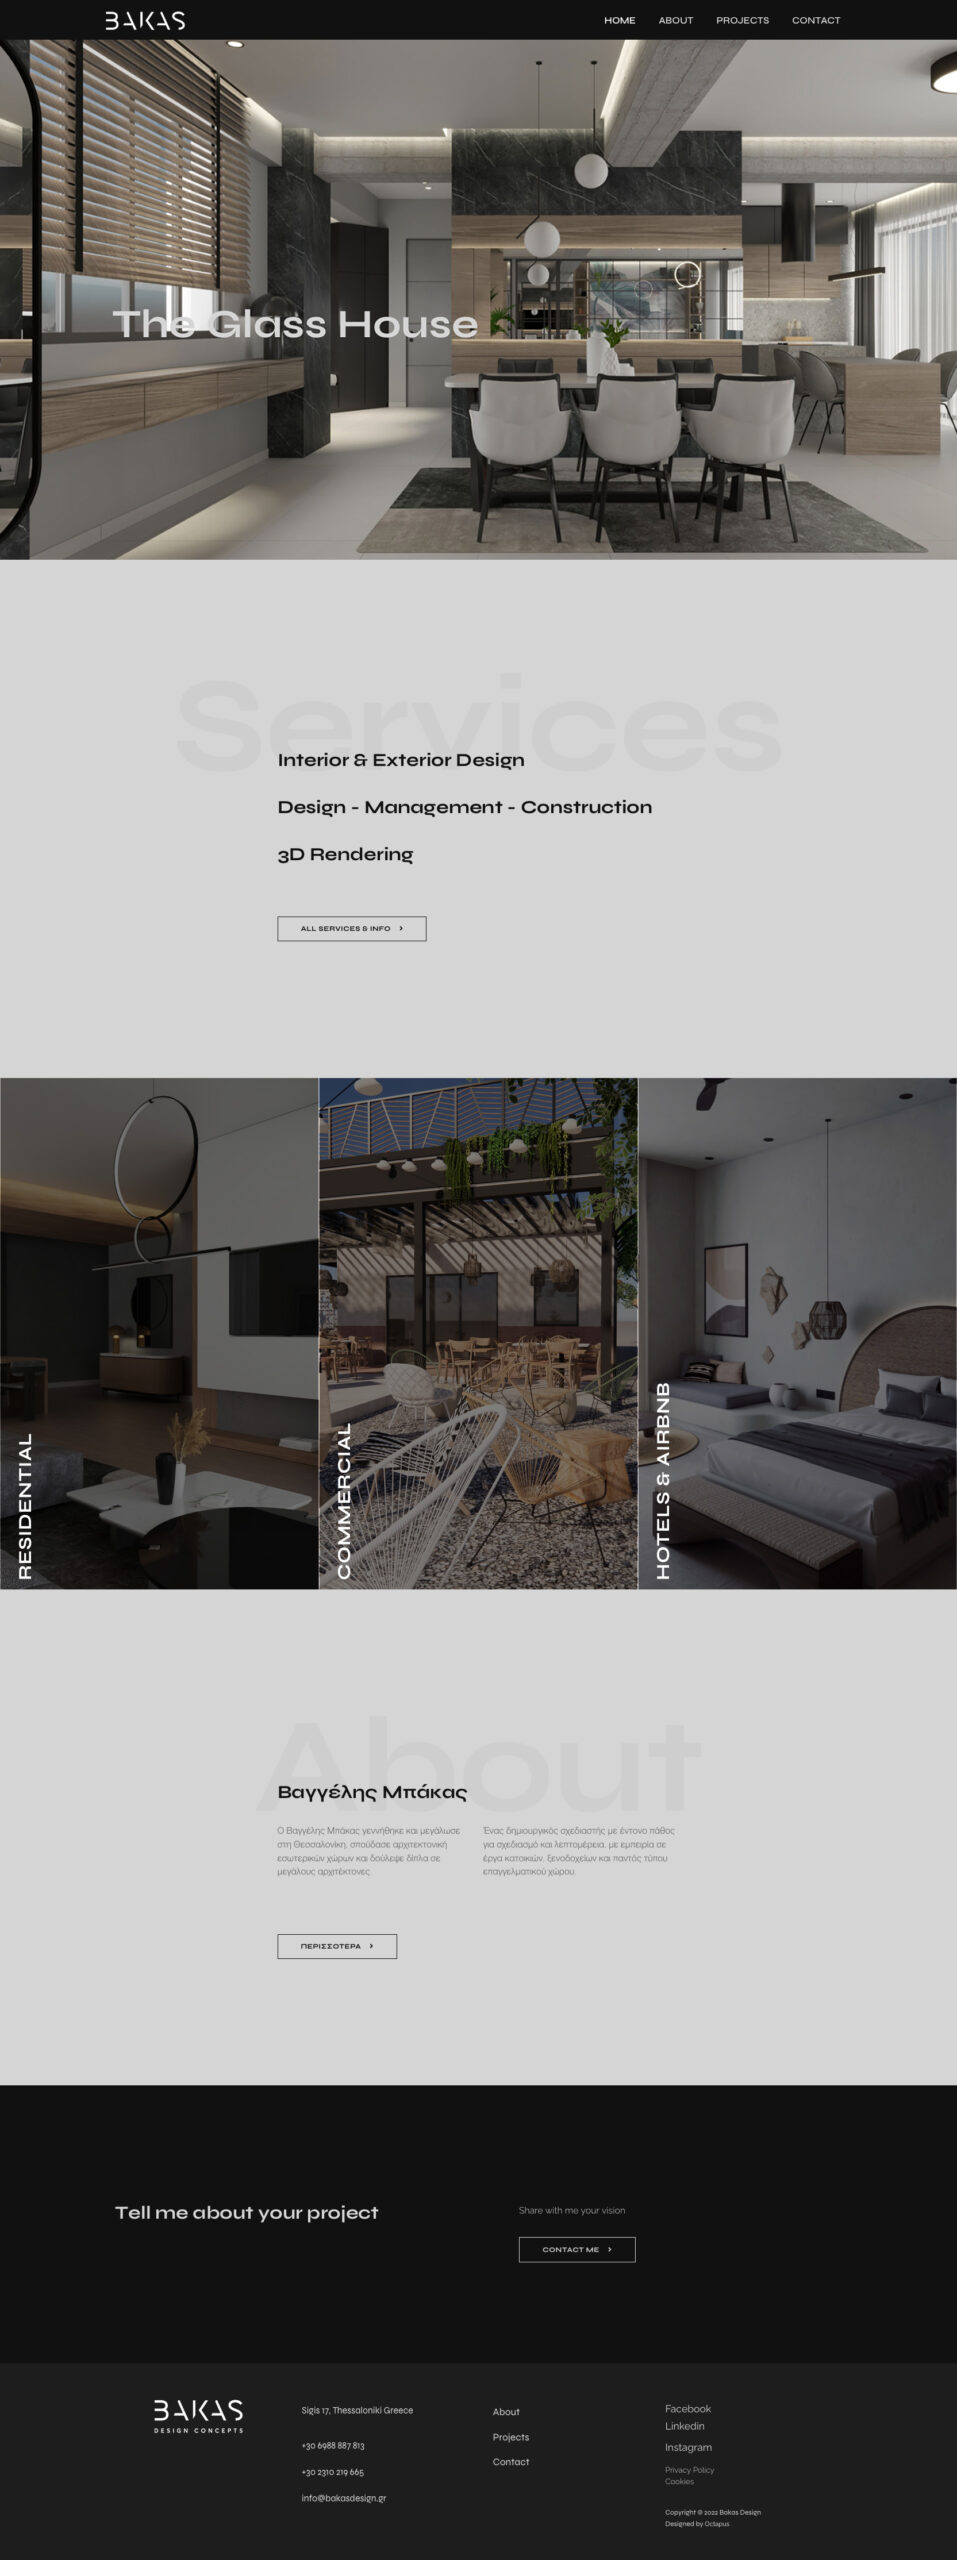 Bakas Design - Home Page